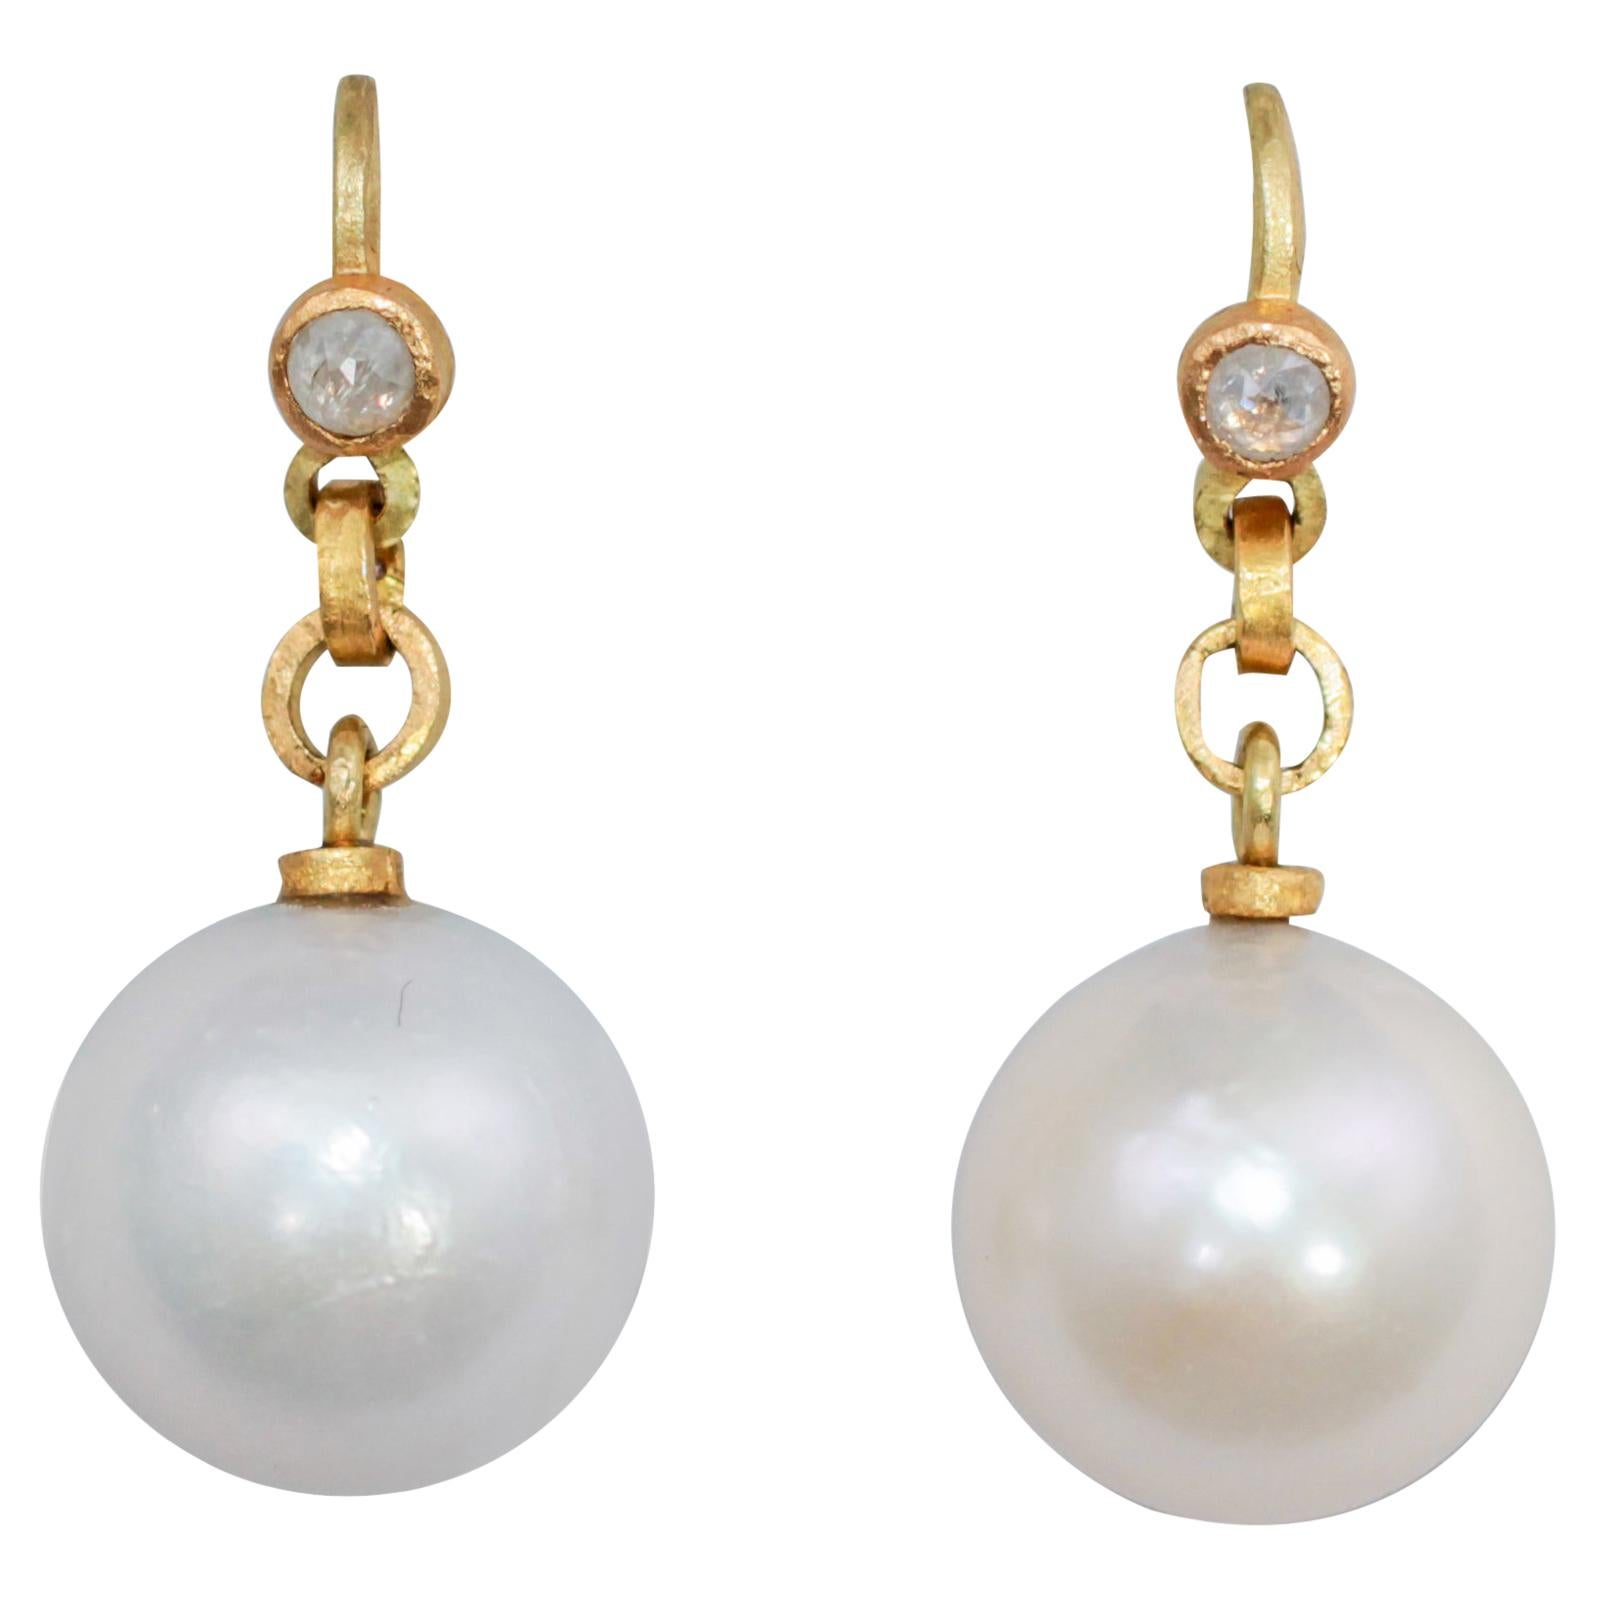 Boucles d'oreilles pendantes contemporaines en or 22-21K, perles des mers du Sud crème et diamant